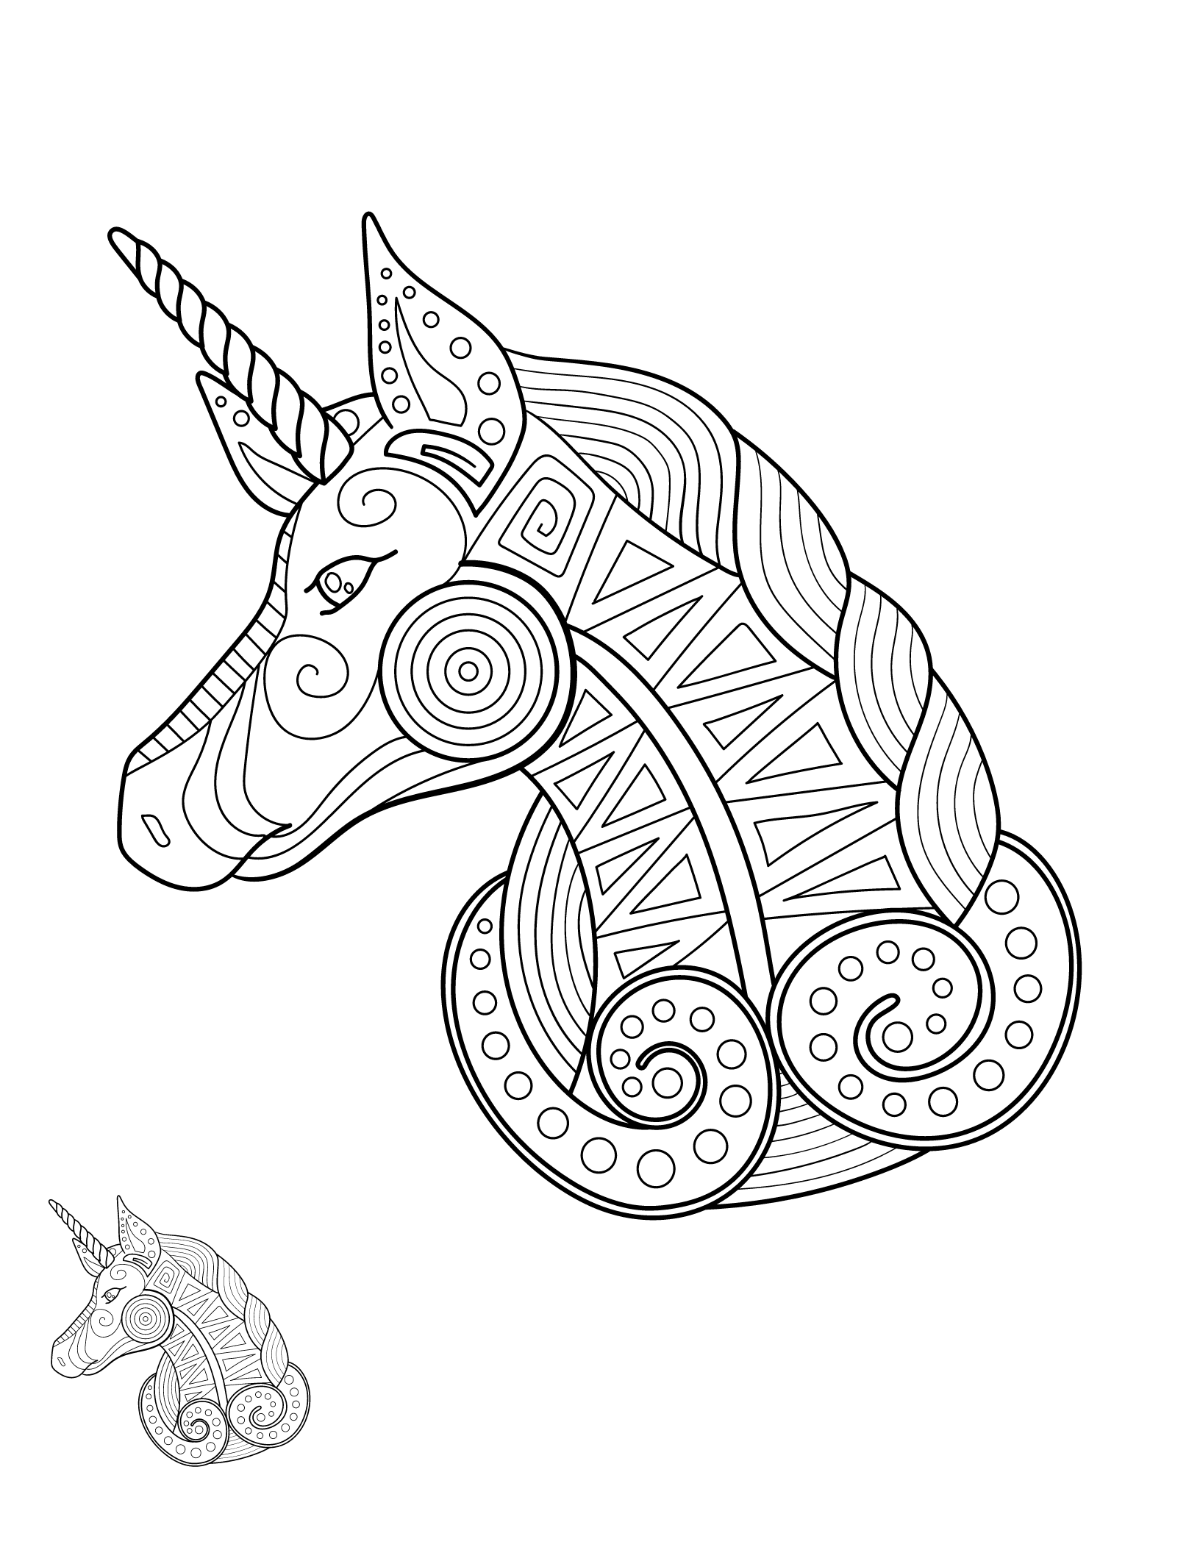 Unicorn Mandala Coloring Page Template